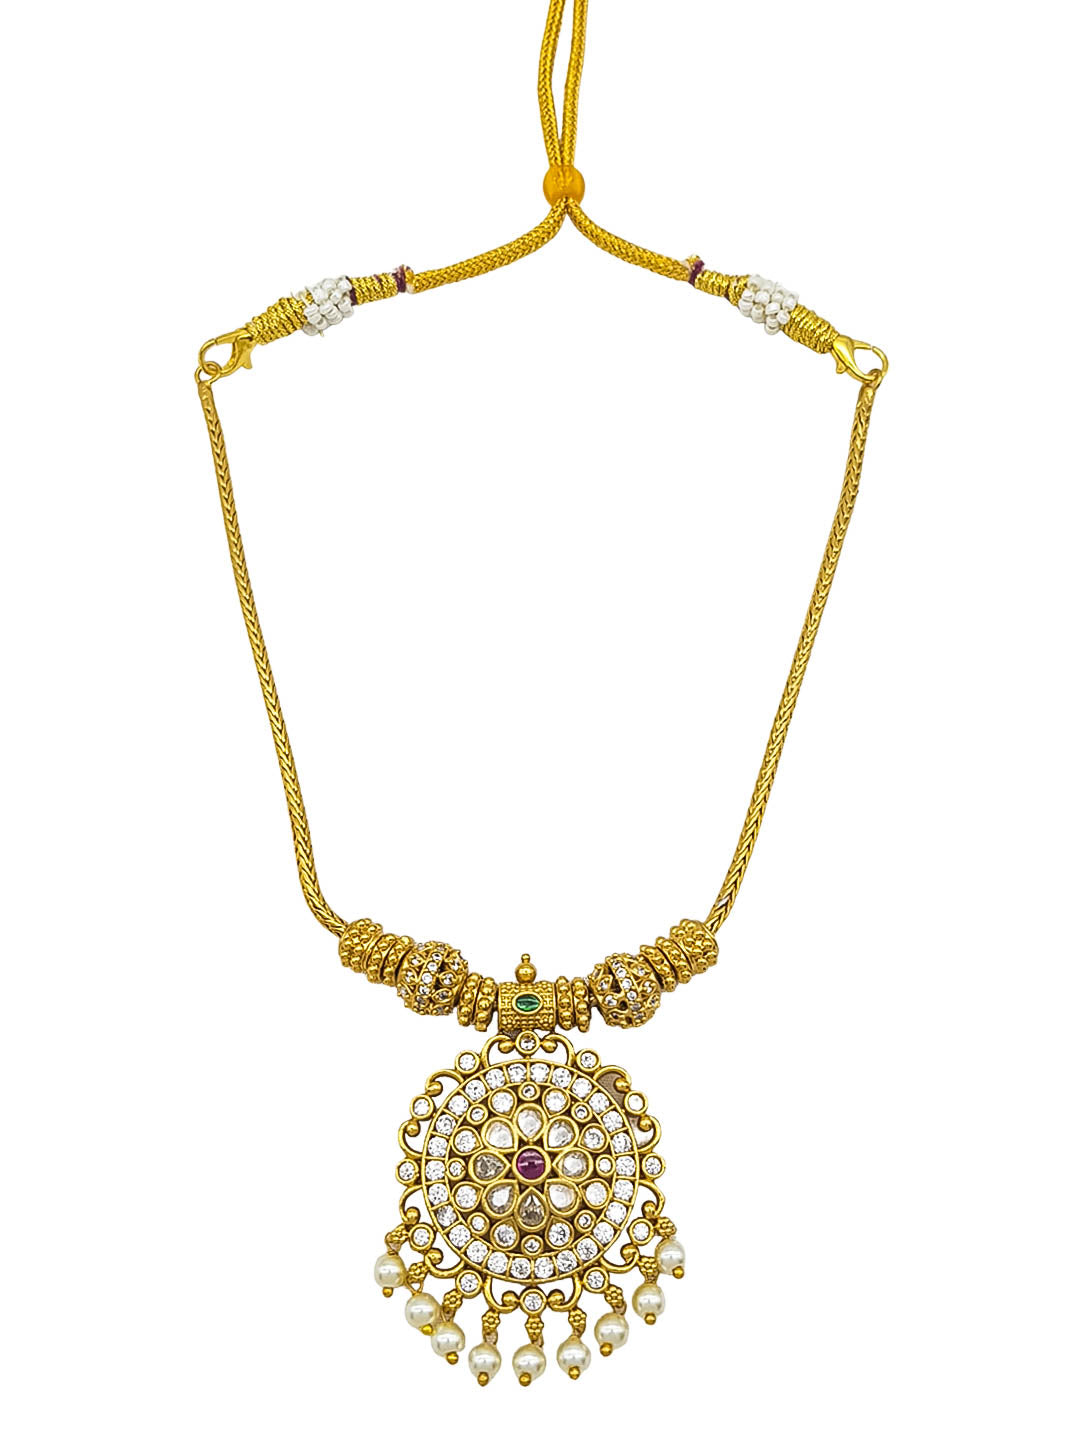 Premium Sayara Collection Elegant CZ Necklace Set 22188N